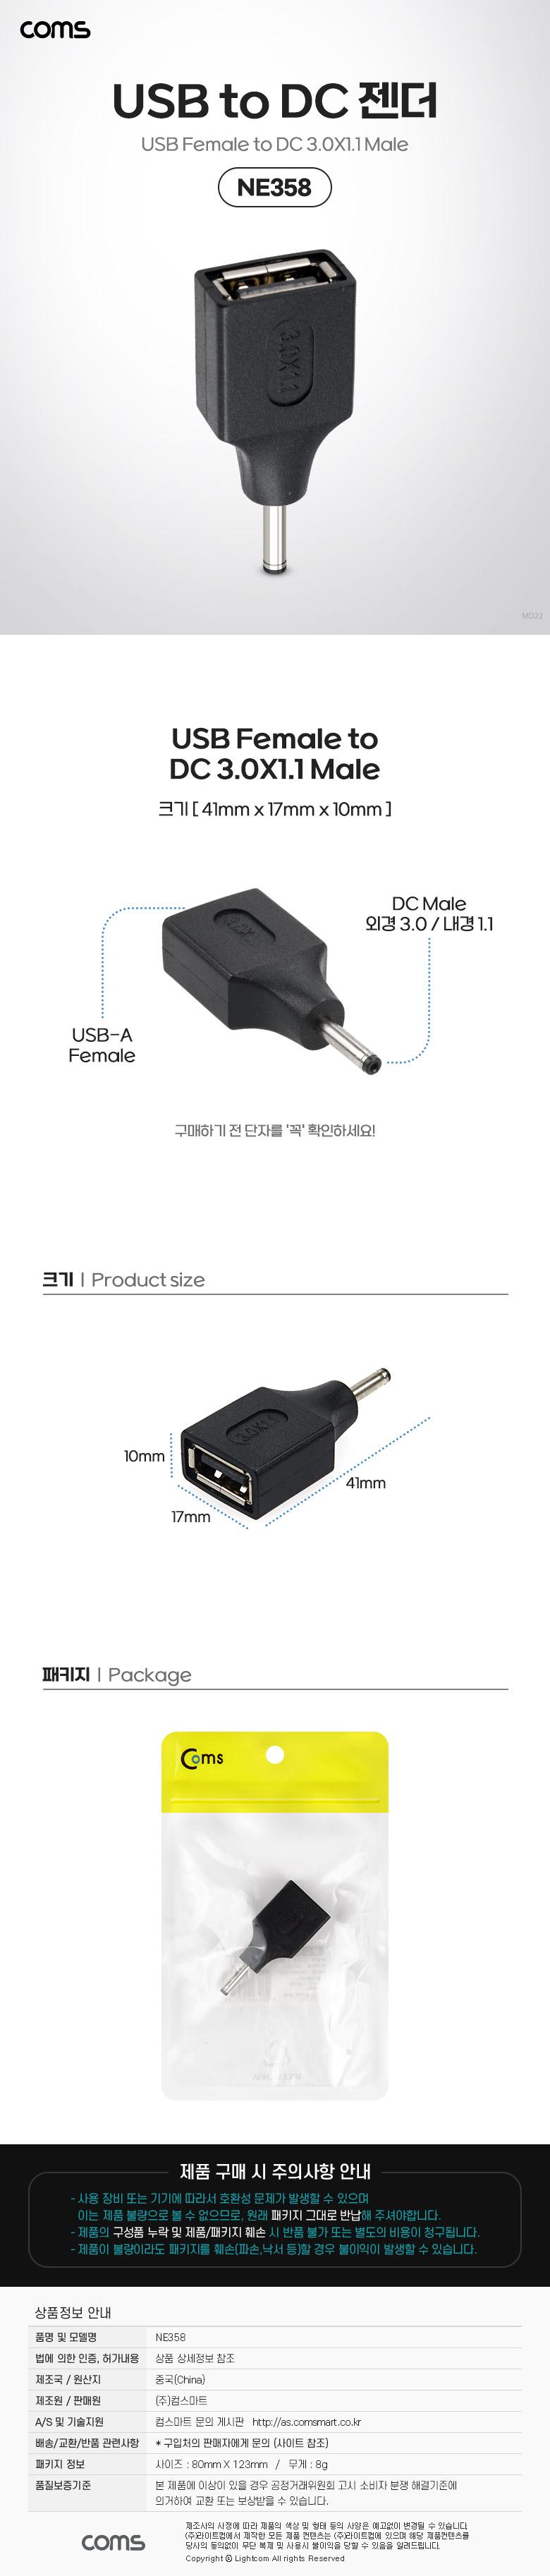 Coms USB   USB 2.0 A F to DC 3.0x1.1 M PC USB ǻͿ DC USBTODC  ǻͿǰ PCǰ